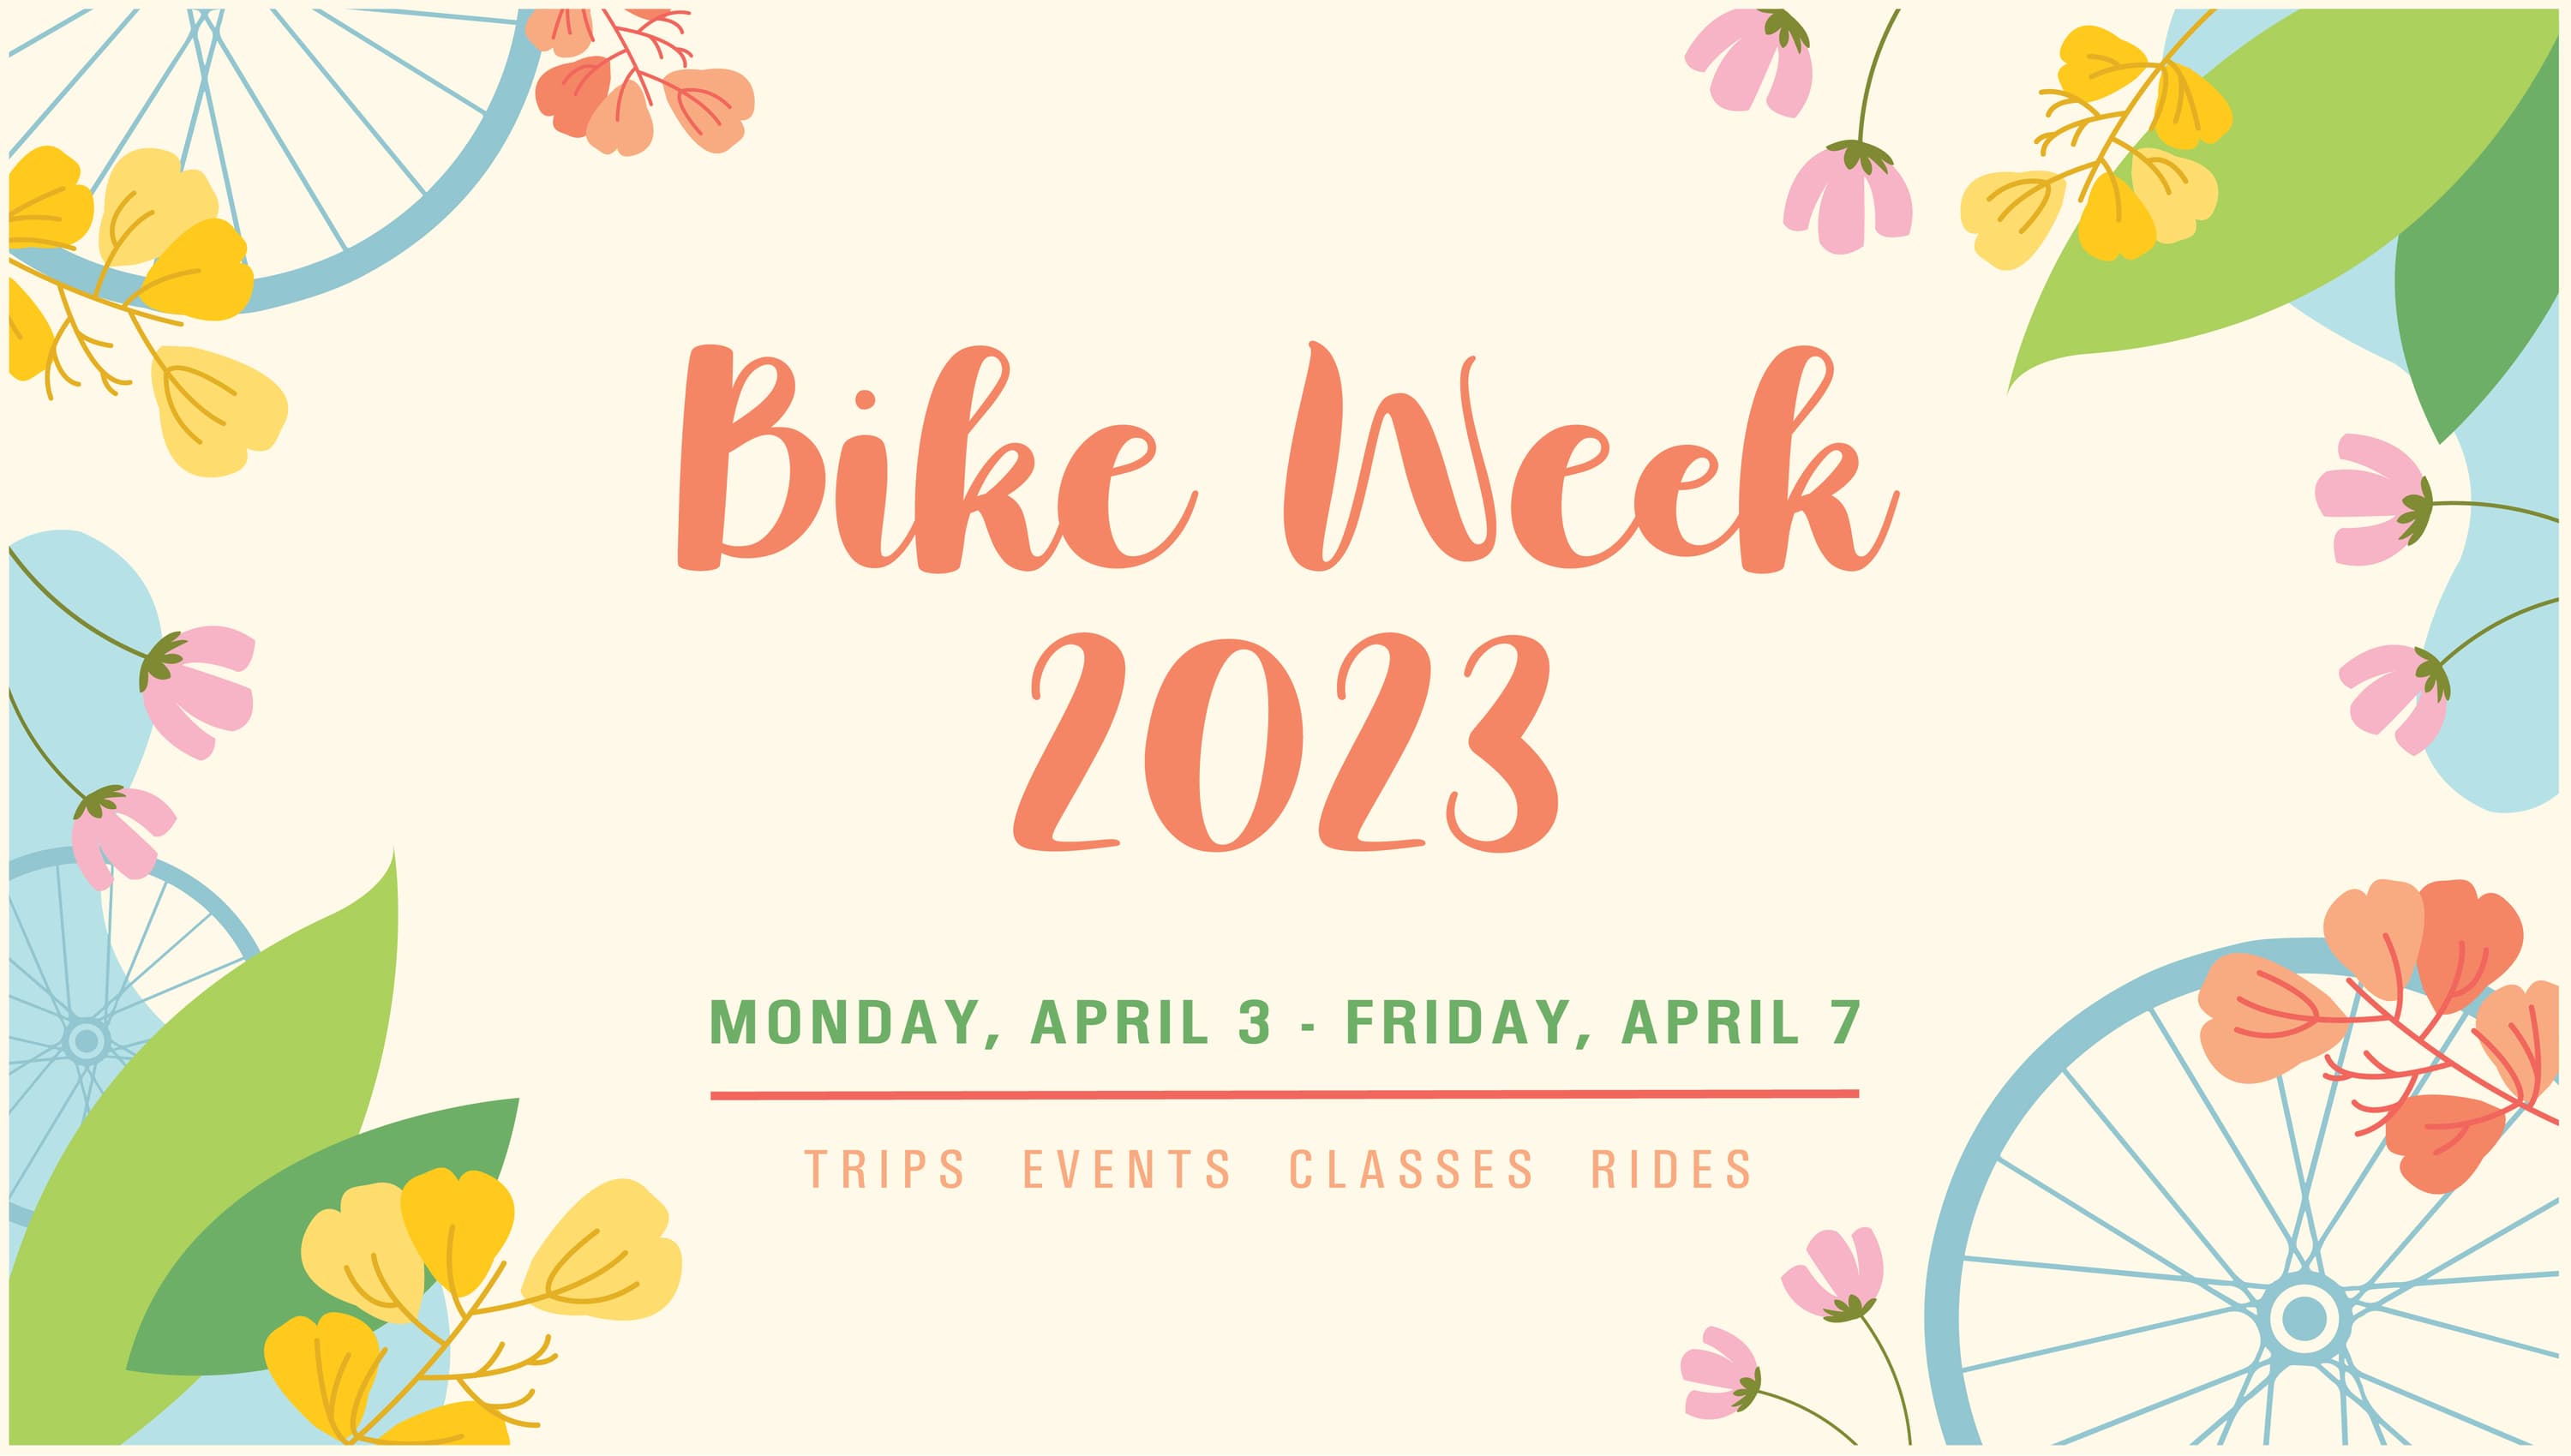 Bike Week 2023